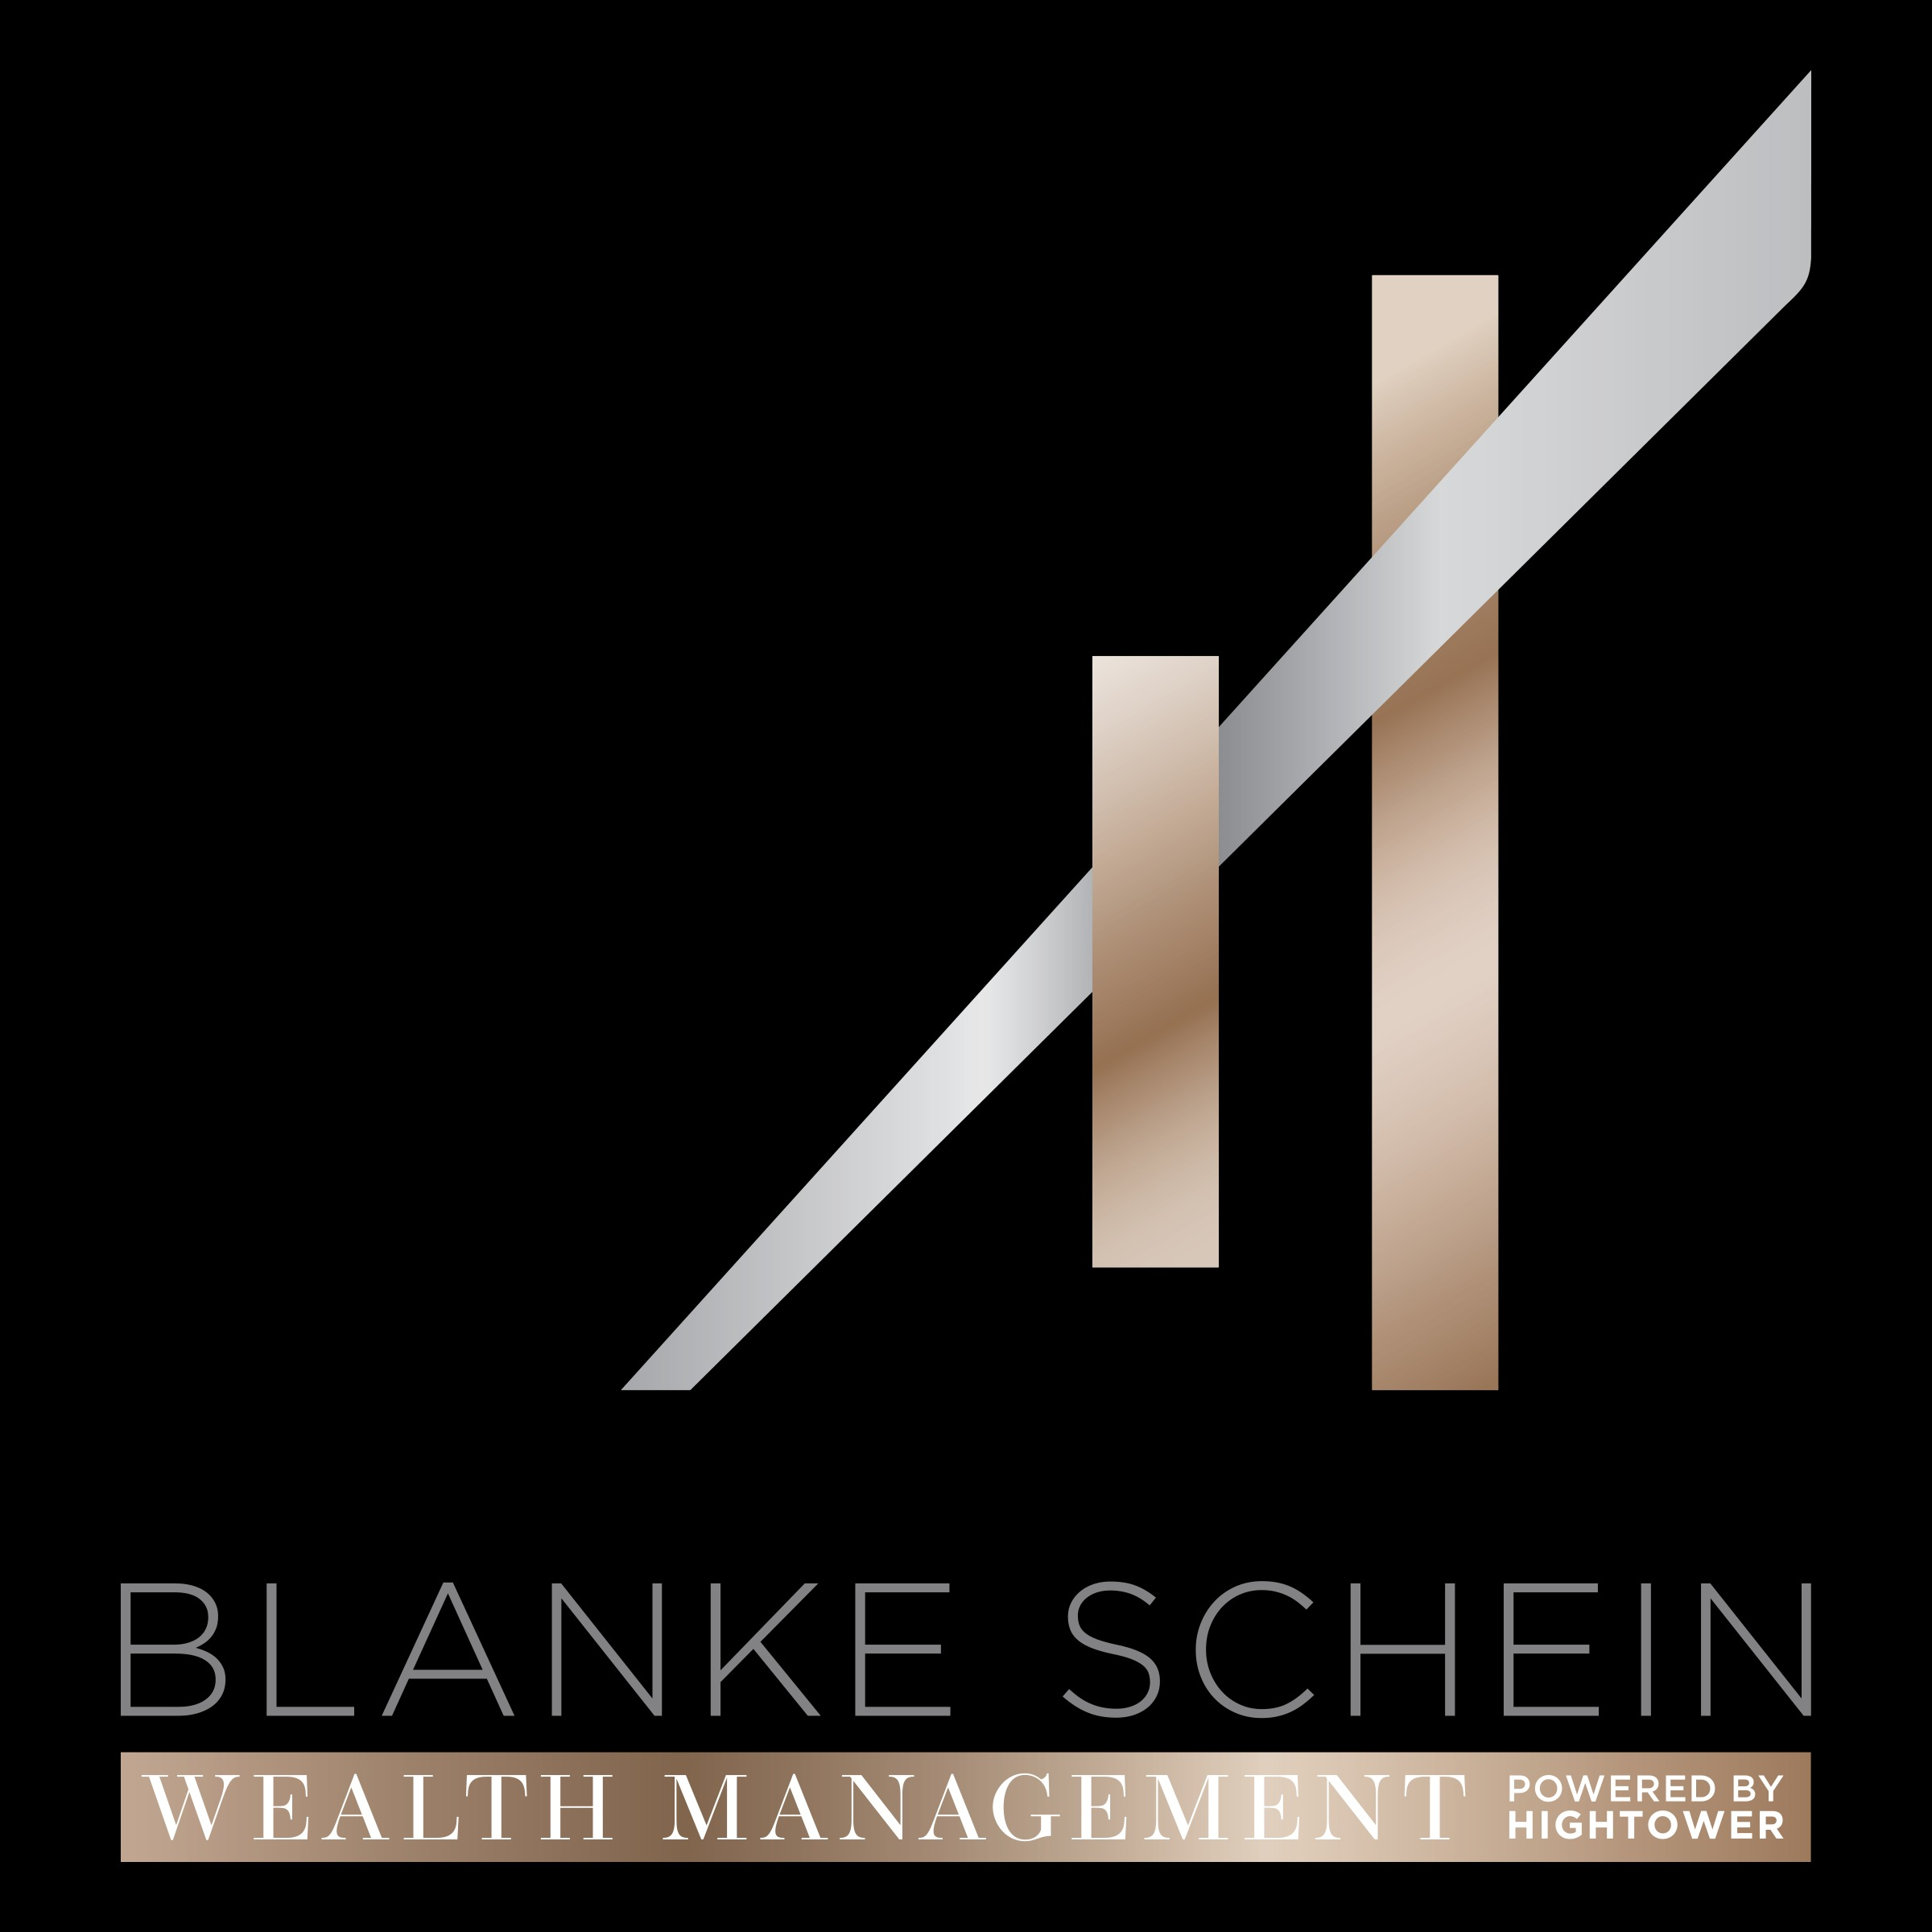 Blanke Schein Wealth Management - A Hightower Company